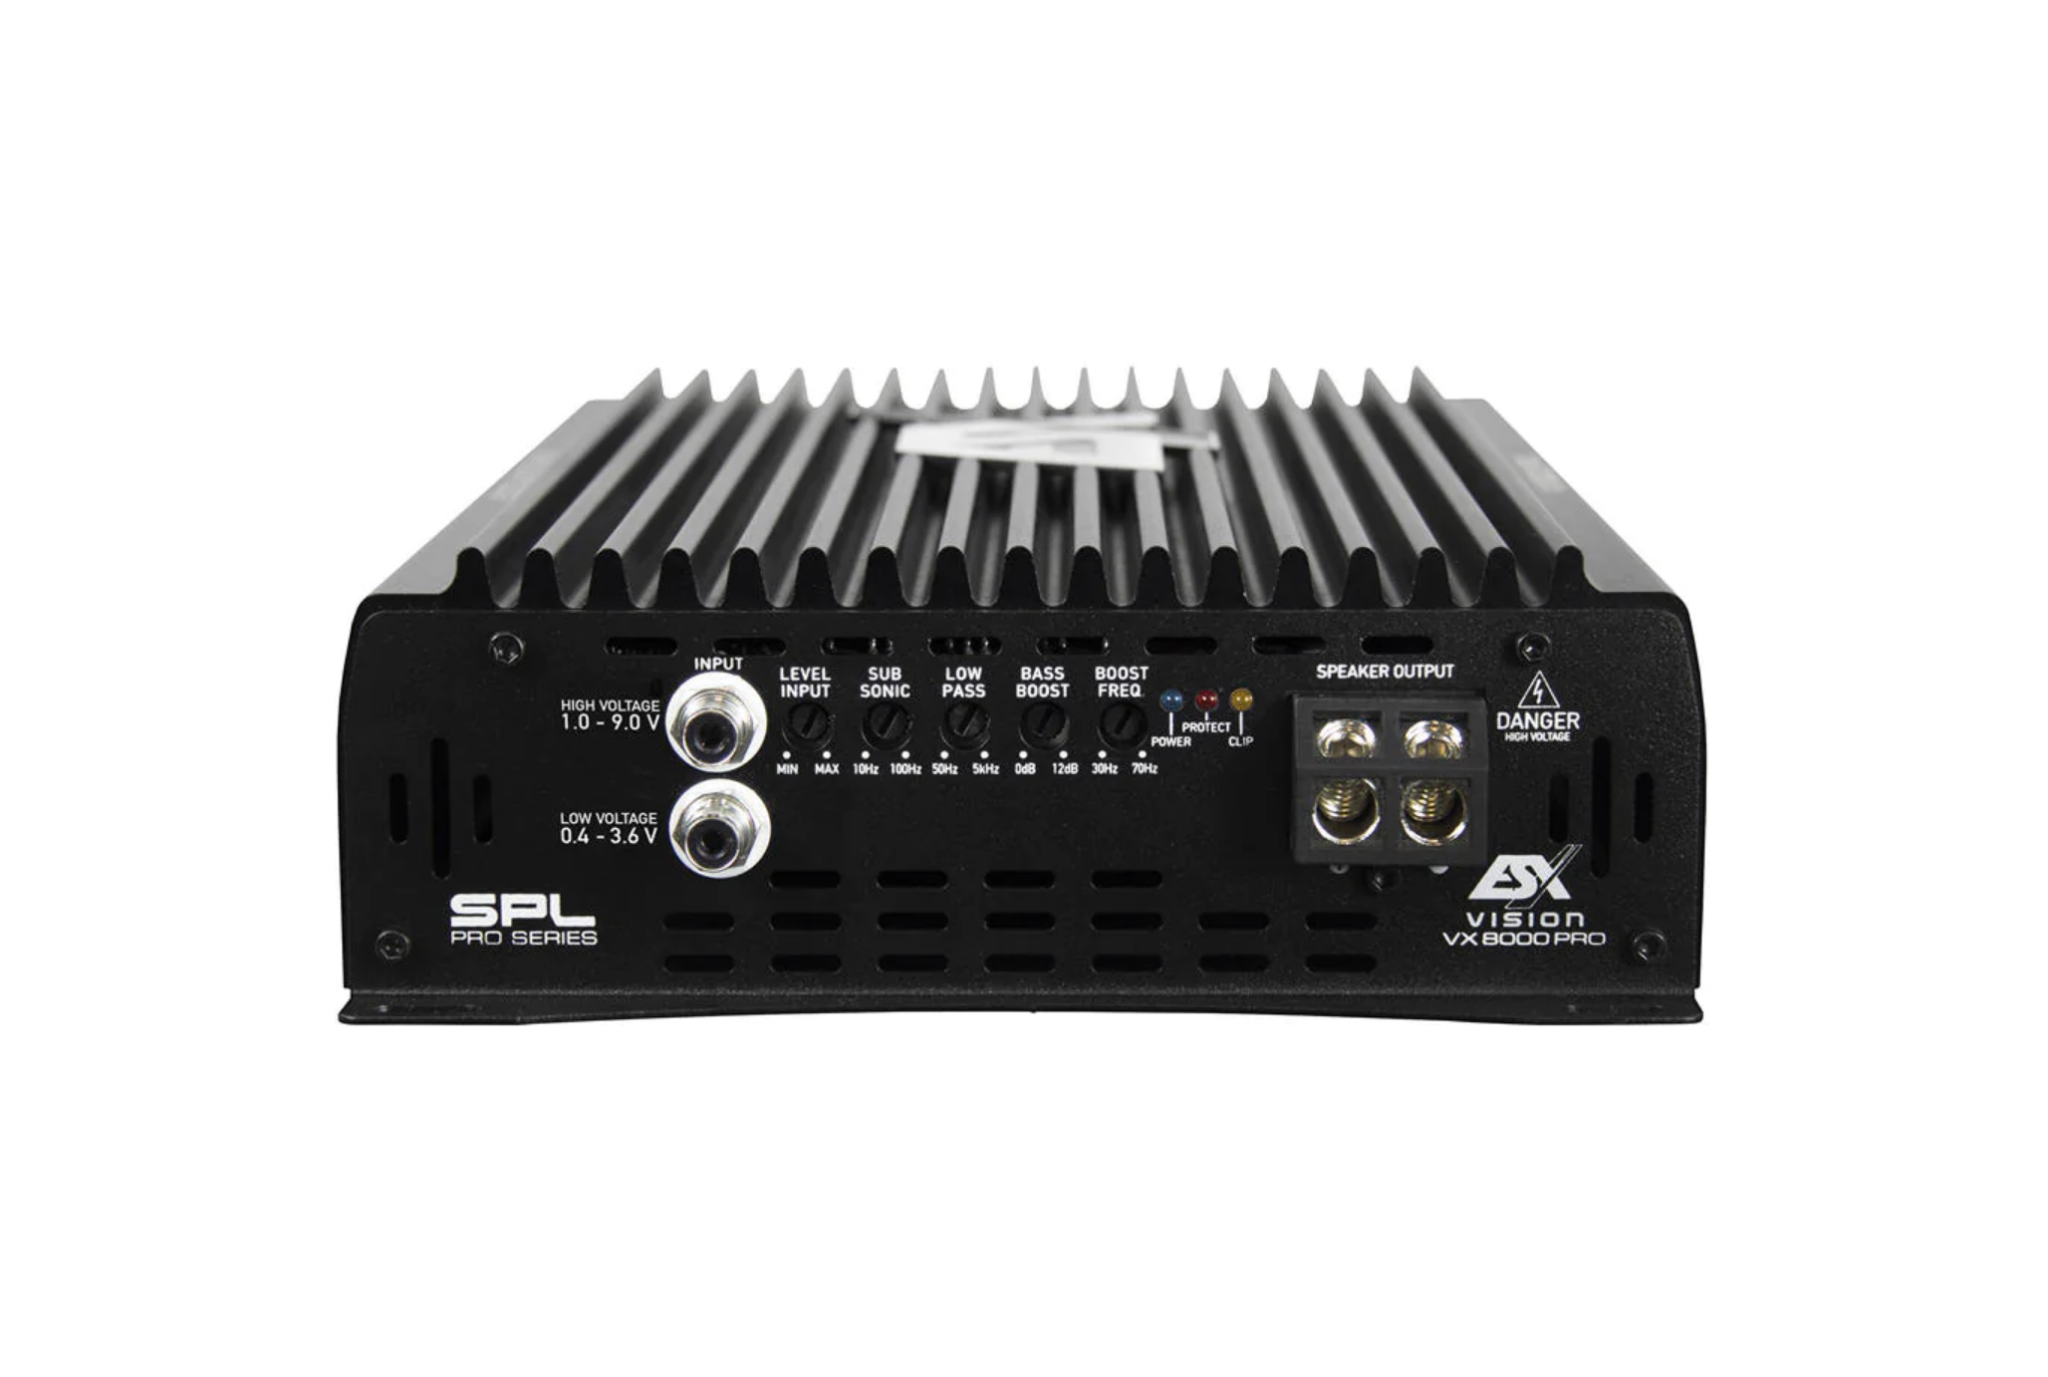 VISION ESX CX2000 PRO Ultra Class D Mono Amplifier